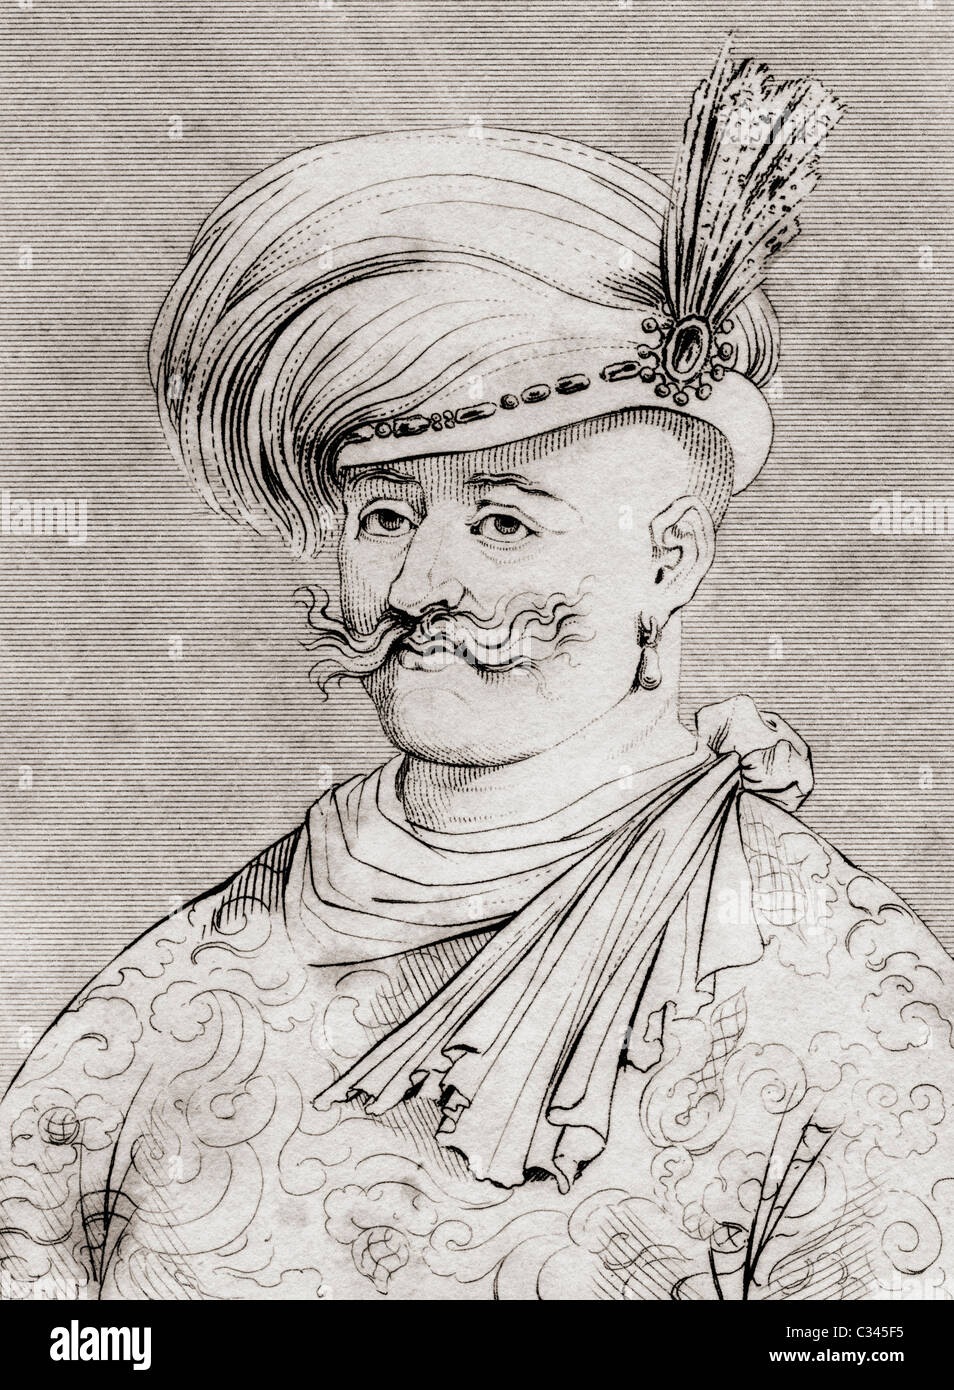 Shah Abbas le grand aka Shah Abbas I de Perse, 1571 - 1629. Shah d'Iran, et gouverneur de la dynastie safavide. Banque D'Images